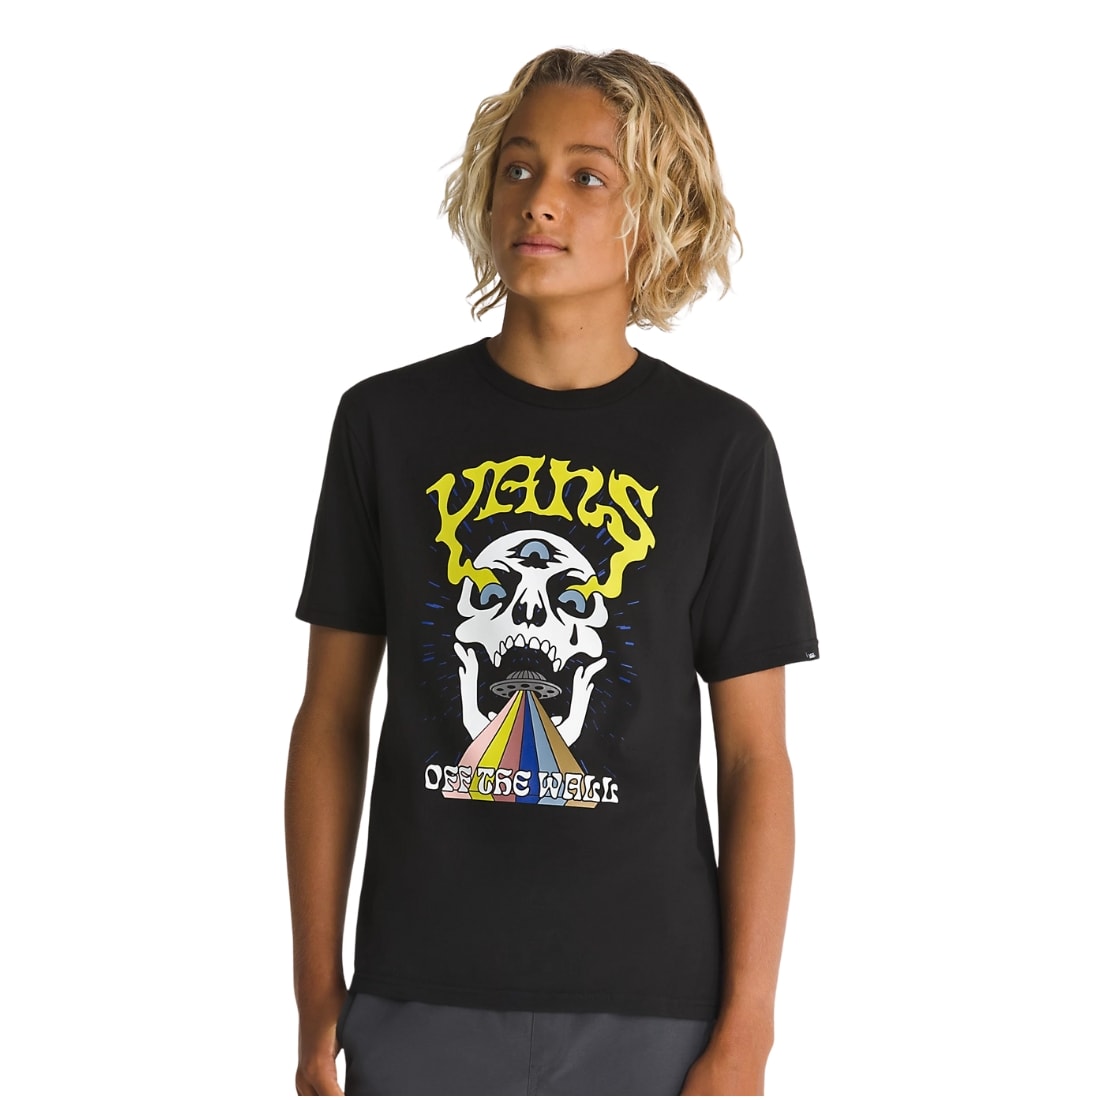 Vans Kids Skull T-Shirt - Black - Boys Skate Brand T-Shirt by Vans